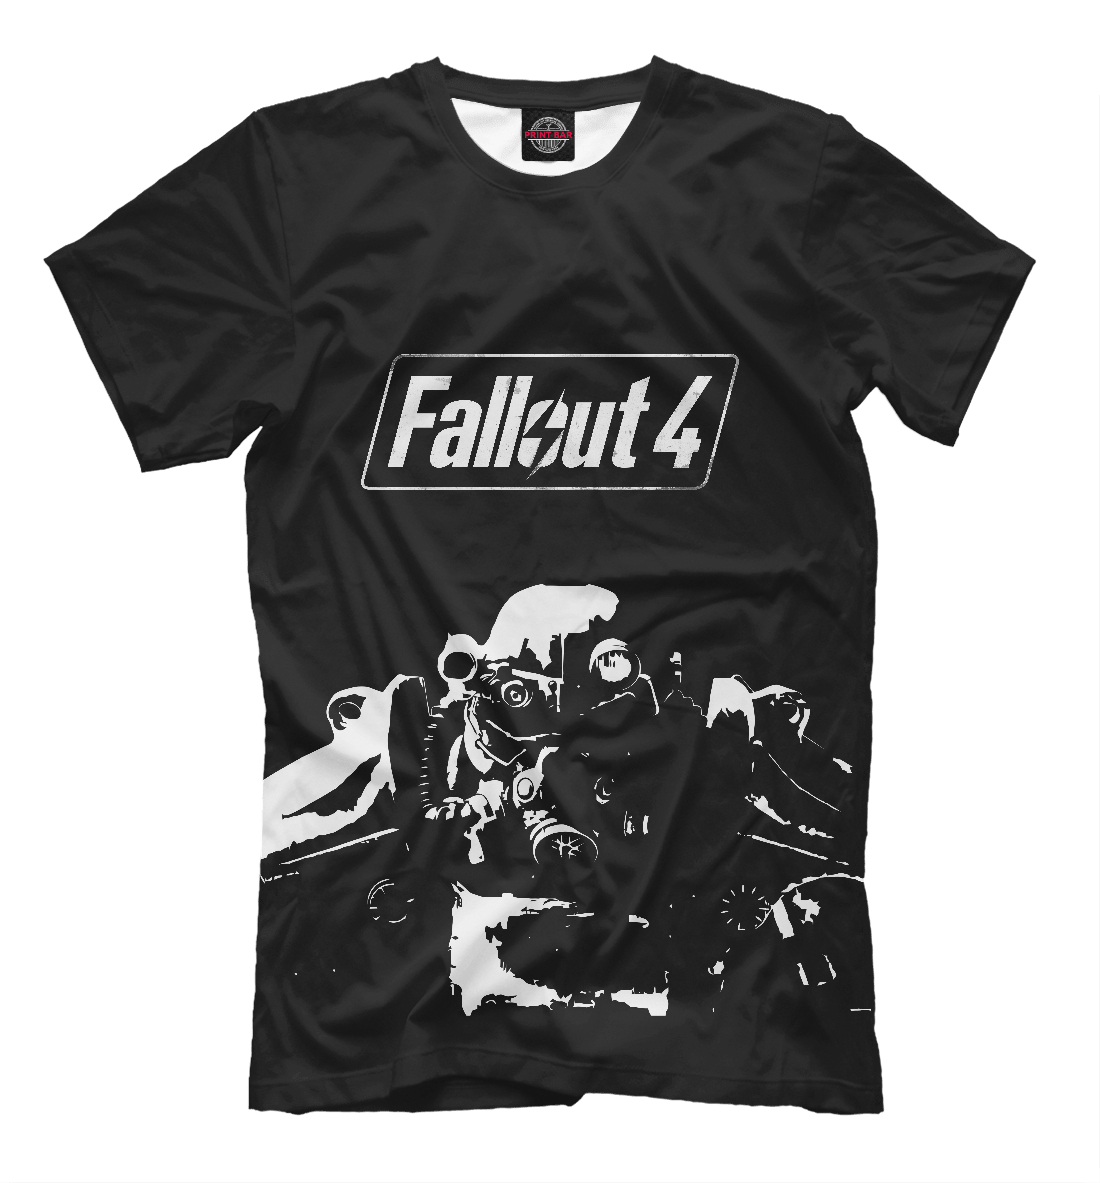 Футболка Fallout 4 для мужчин, артикул: FOT-734035-fut-2mp